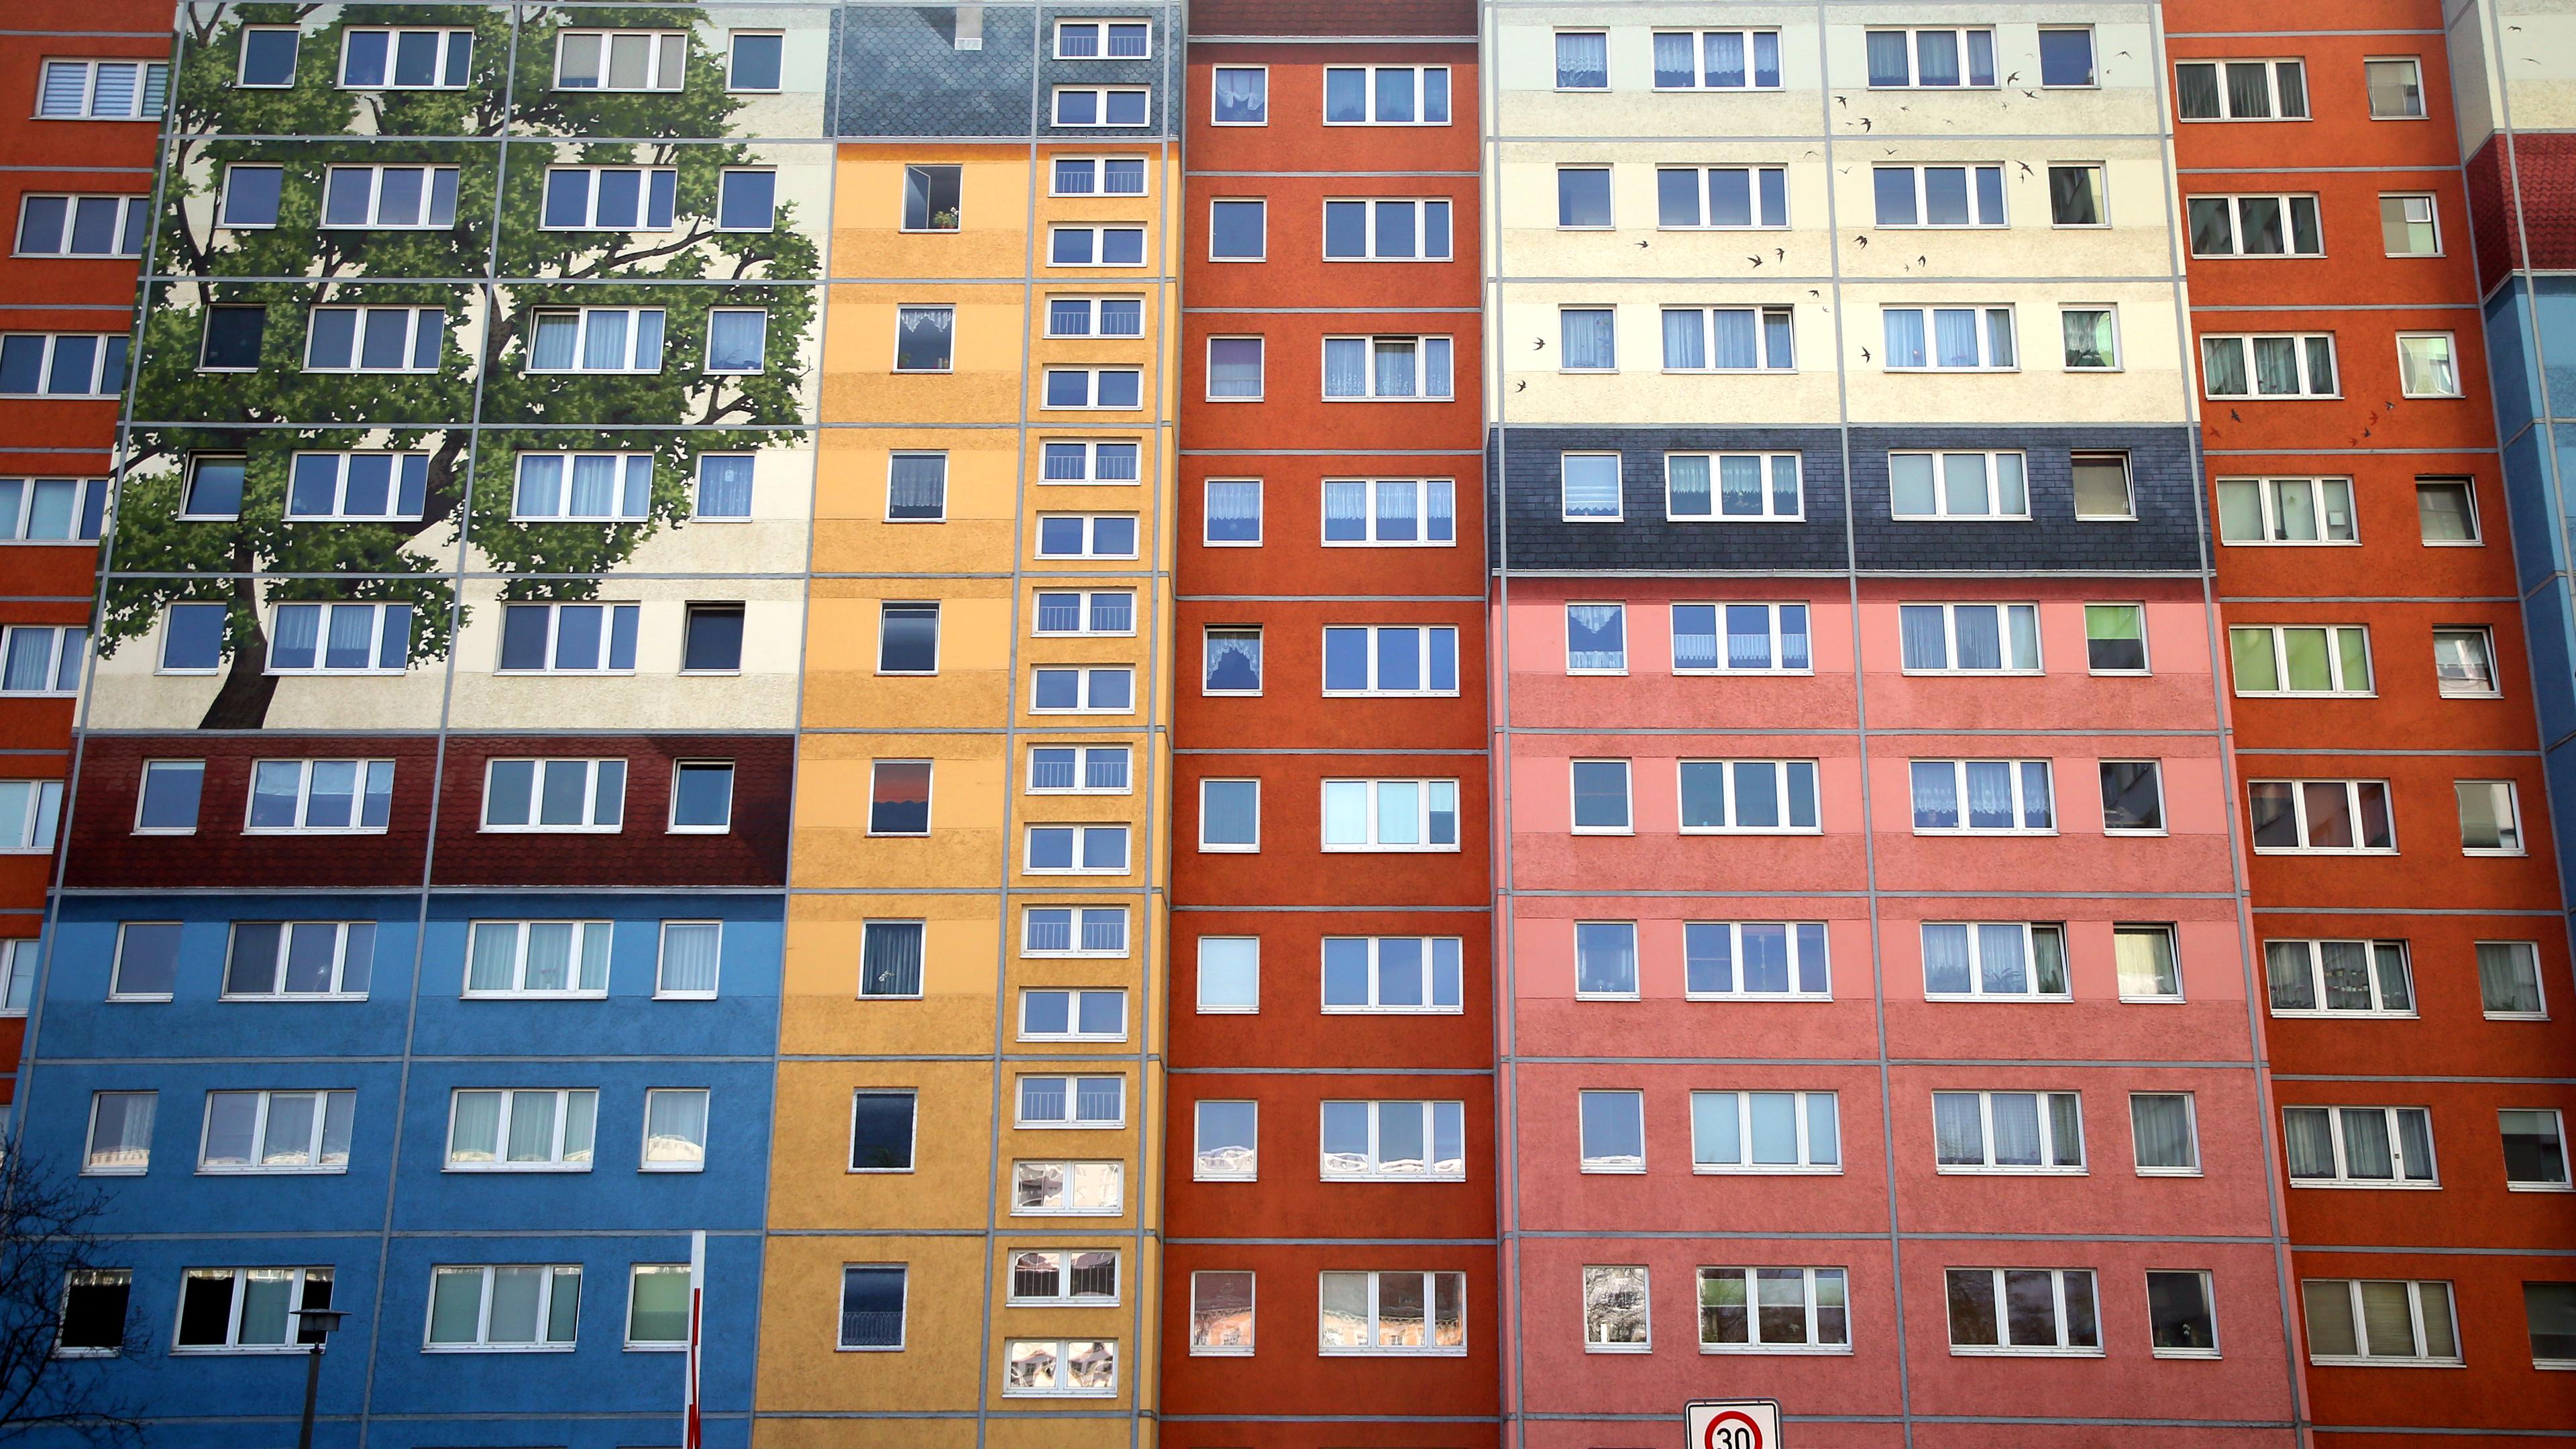 Farblich gestaltete Plattenbauten an der Frankfurter Allee im Bezirk Friedrichshain. 